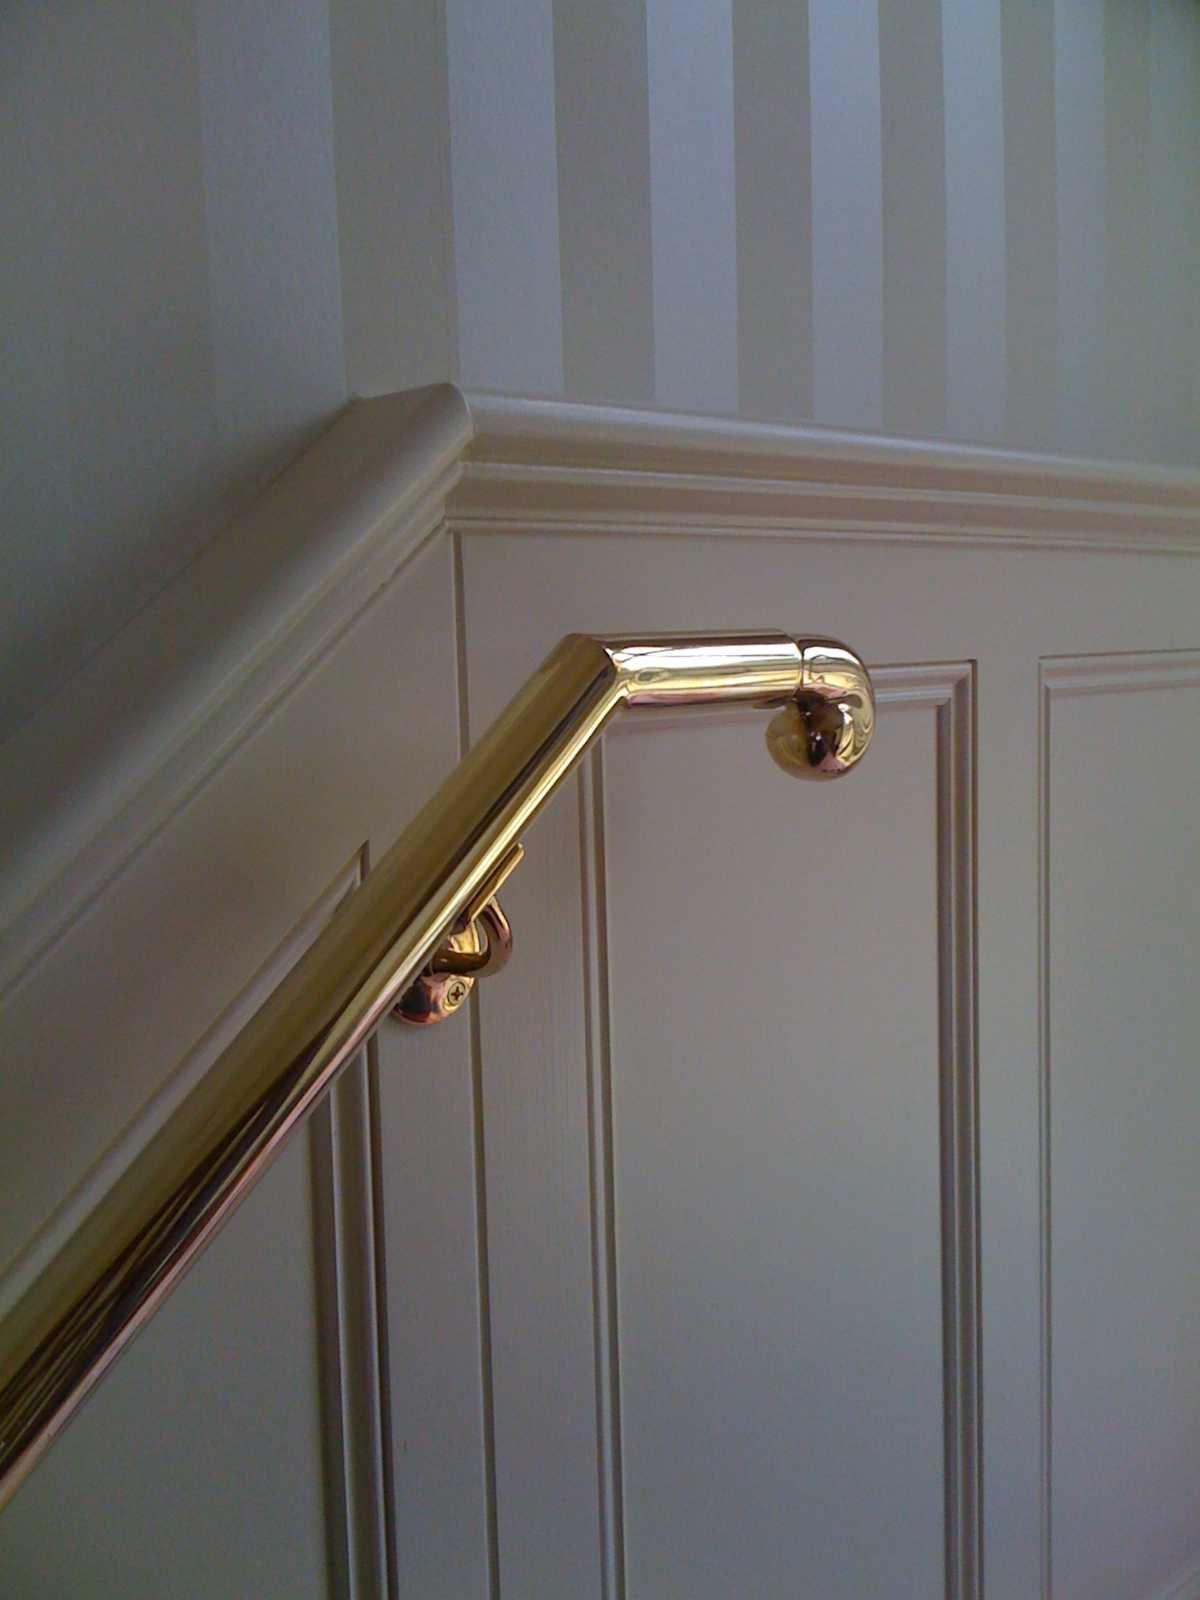 Brass handrail tube